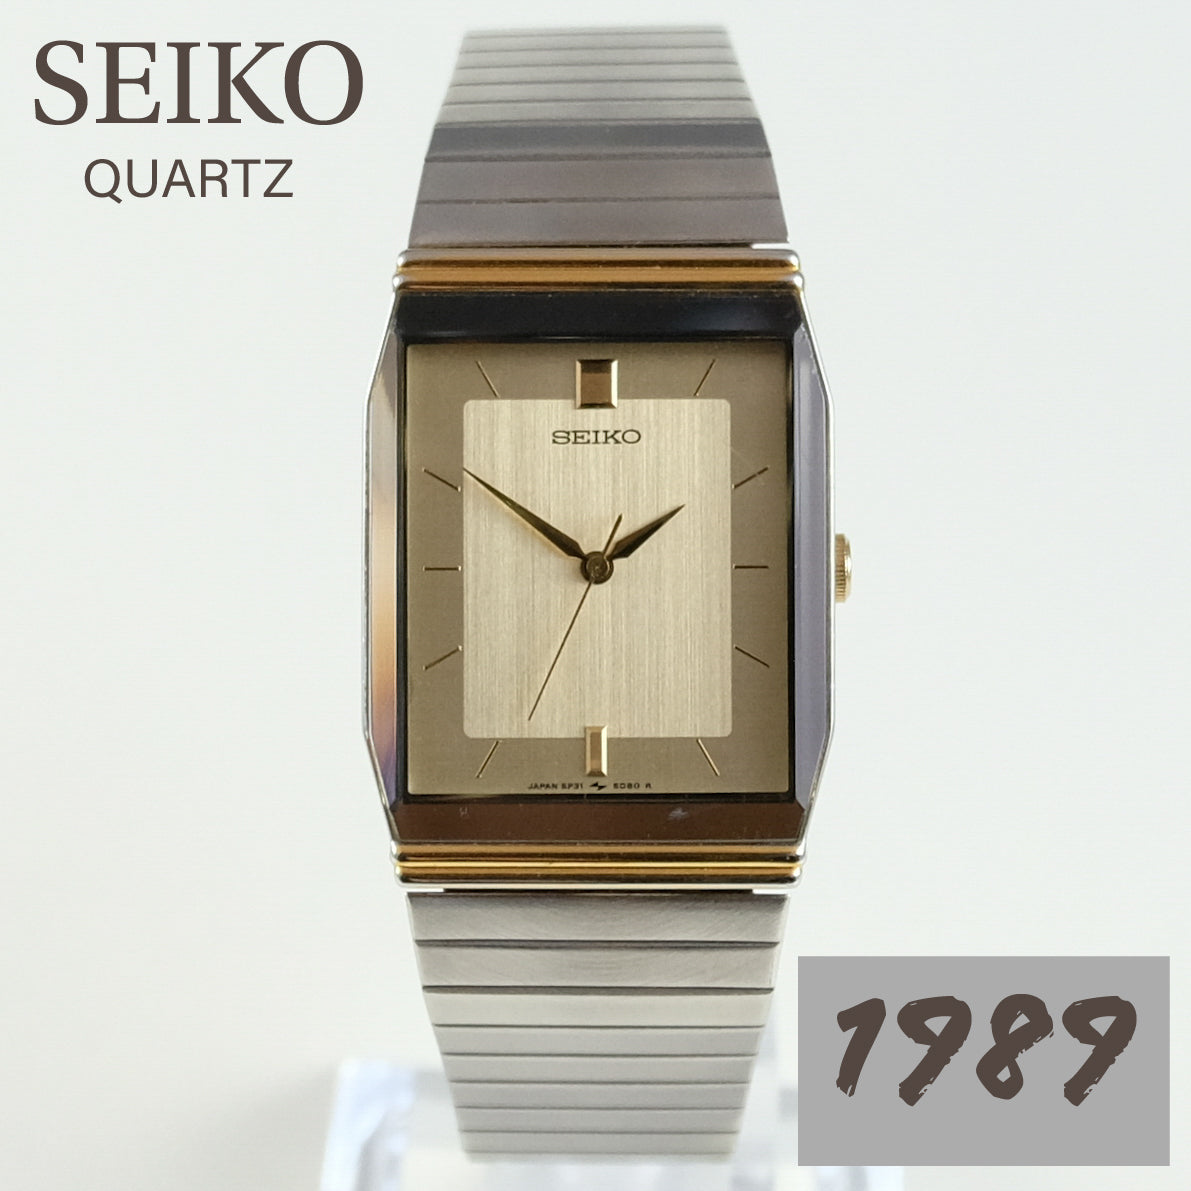 1989 Seiko Quartz 5P31-5000